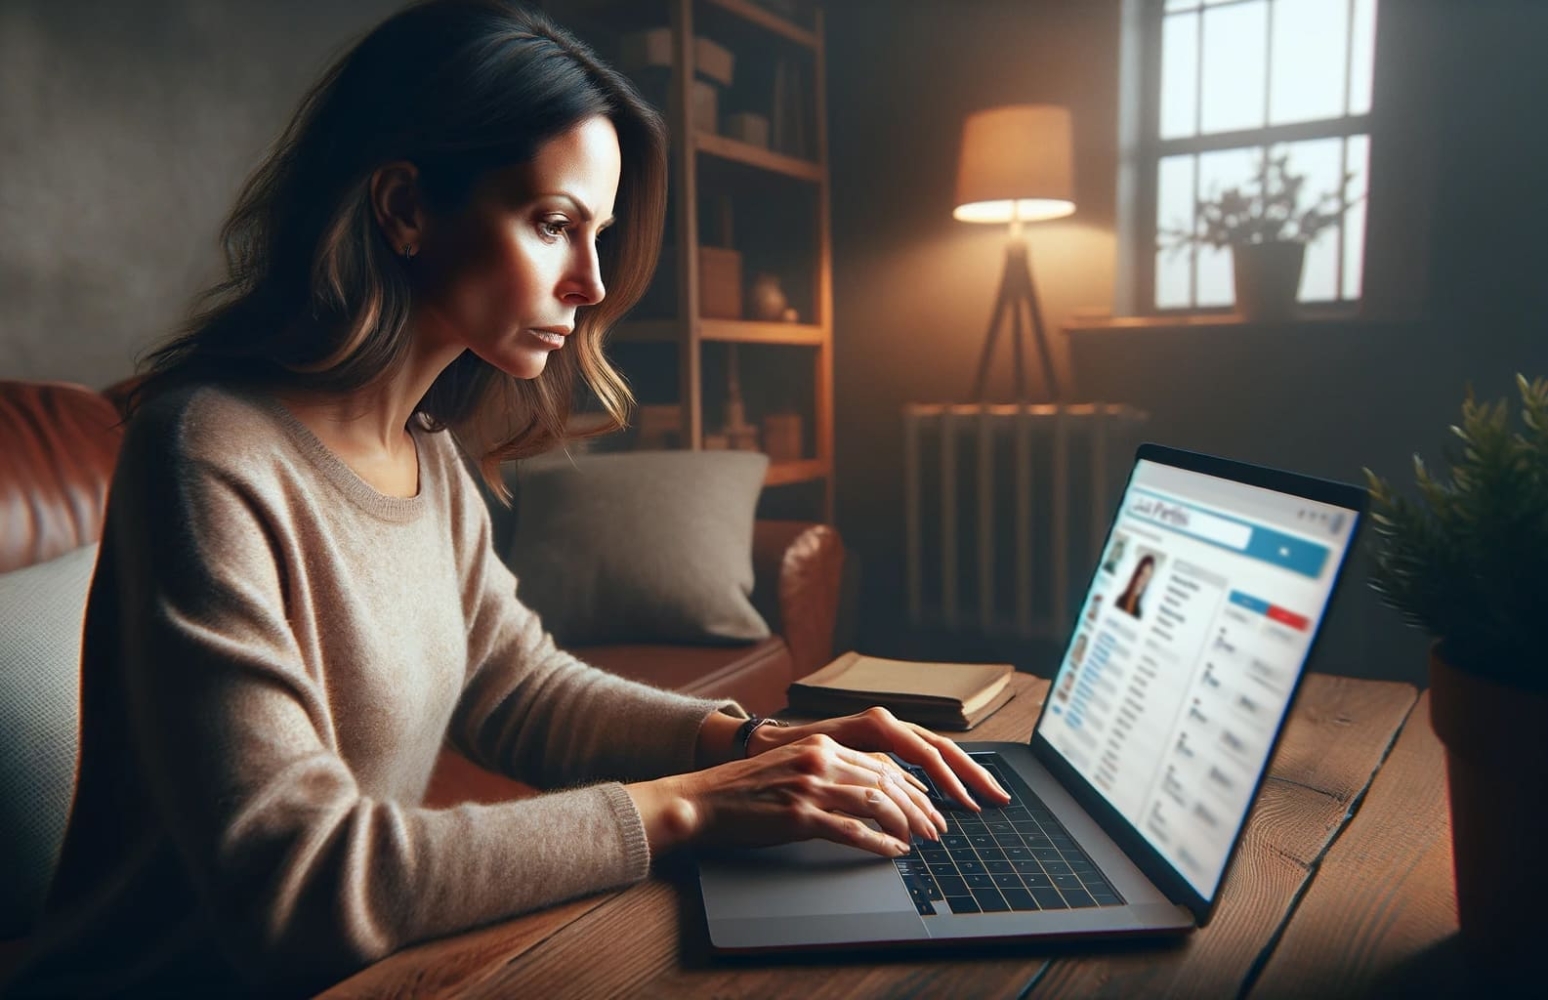 Une femme assise à son bureau dans un environnement domestique, concentrée sur les profils d'utilisateurs sur son ordinateur portable, regardant l'écran où une application mobile de recherche de personnes est ouverte